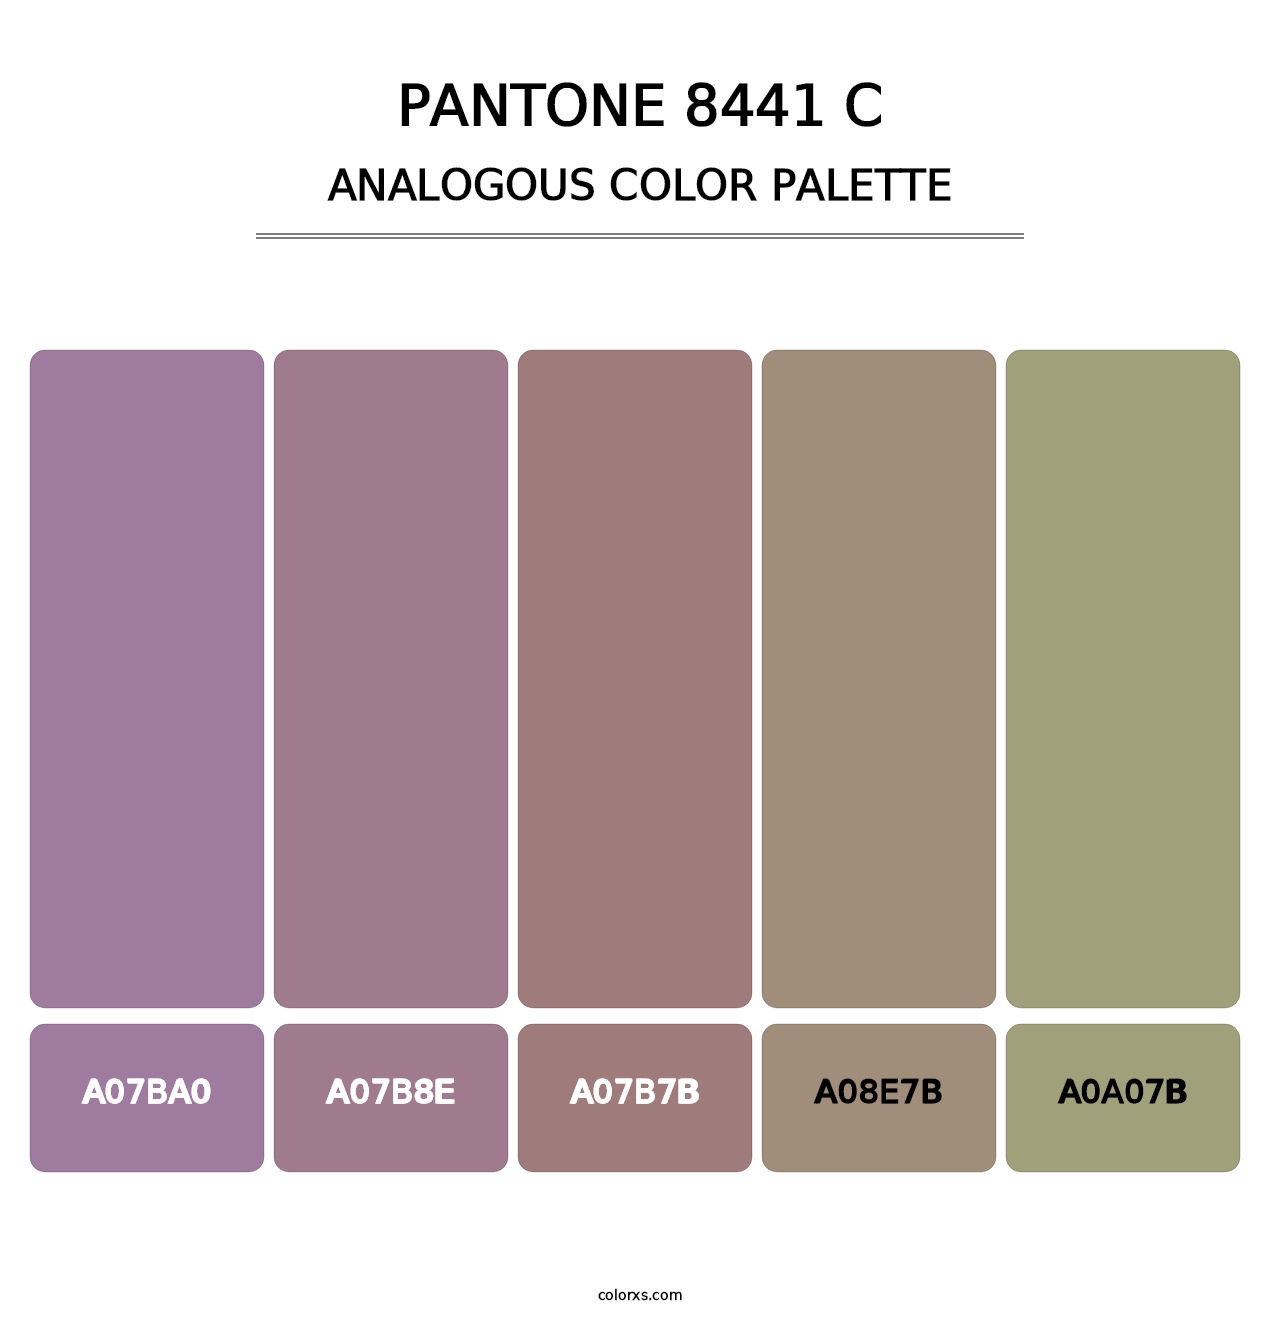 PANTONE 8441 C - Analogous Color Palette